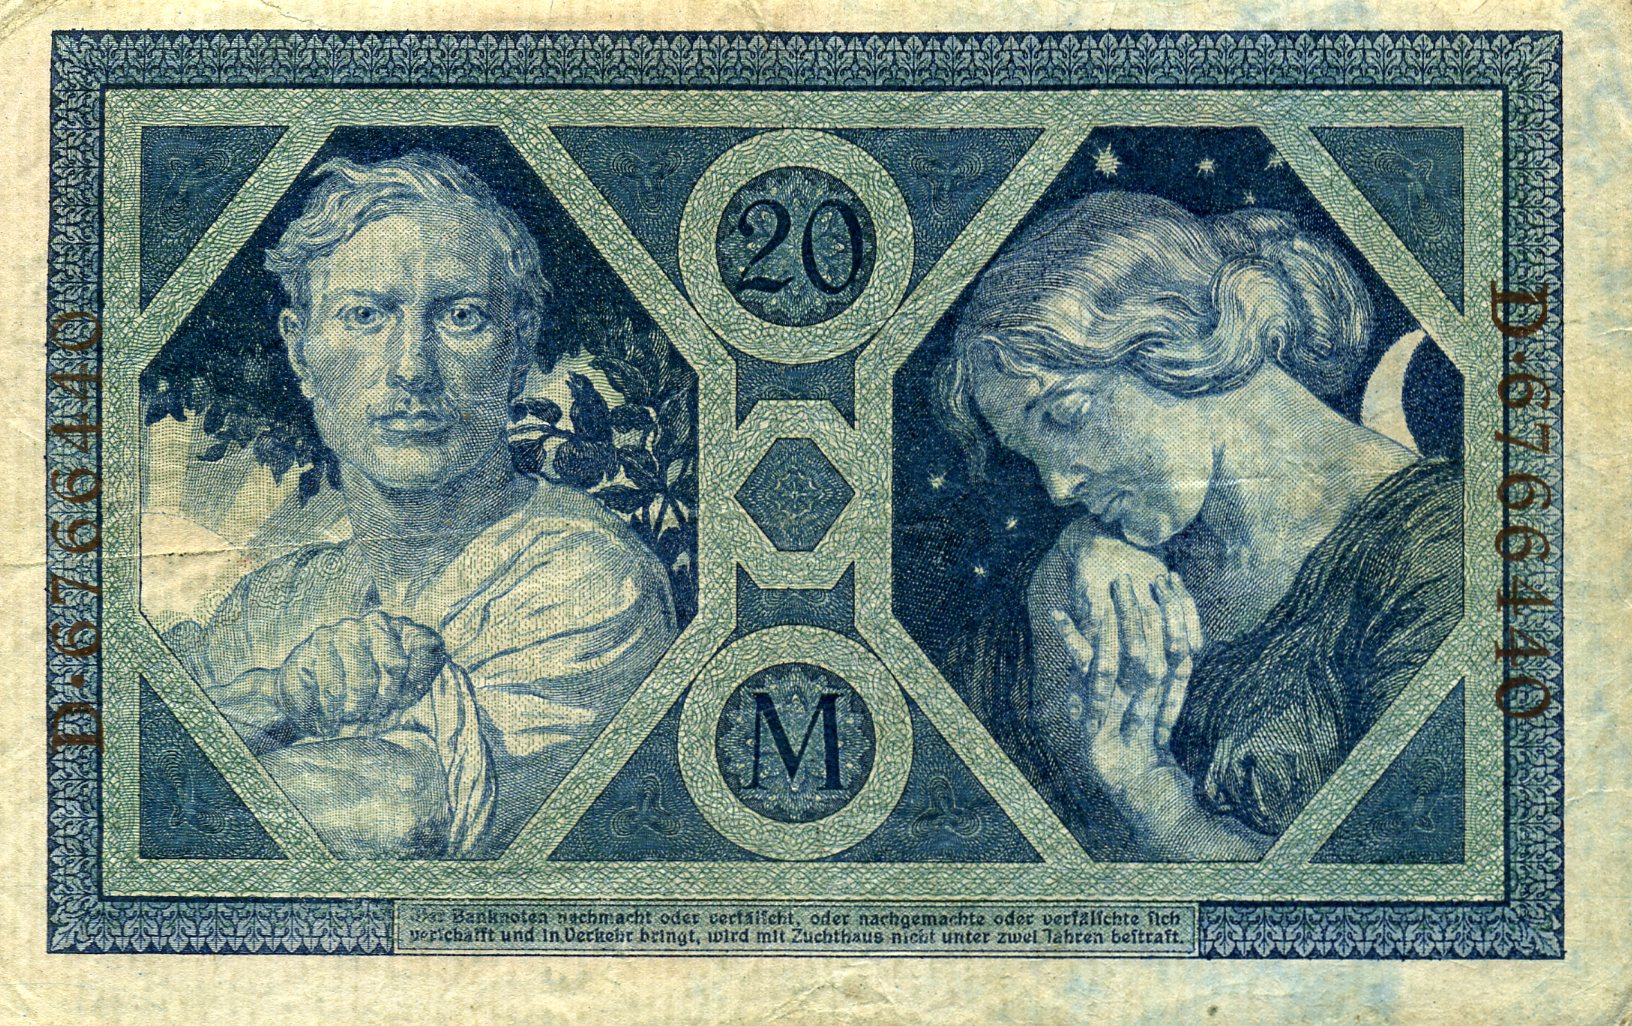 20 марок 4 ноября 1915 года. Коричневая печать. Реверс. Реферат Рефератович.